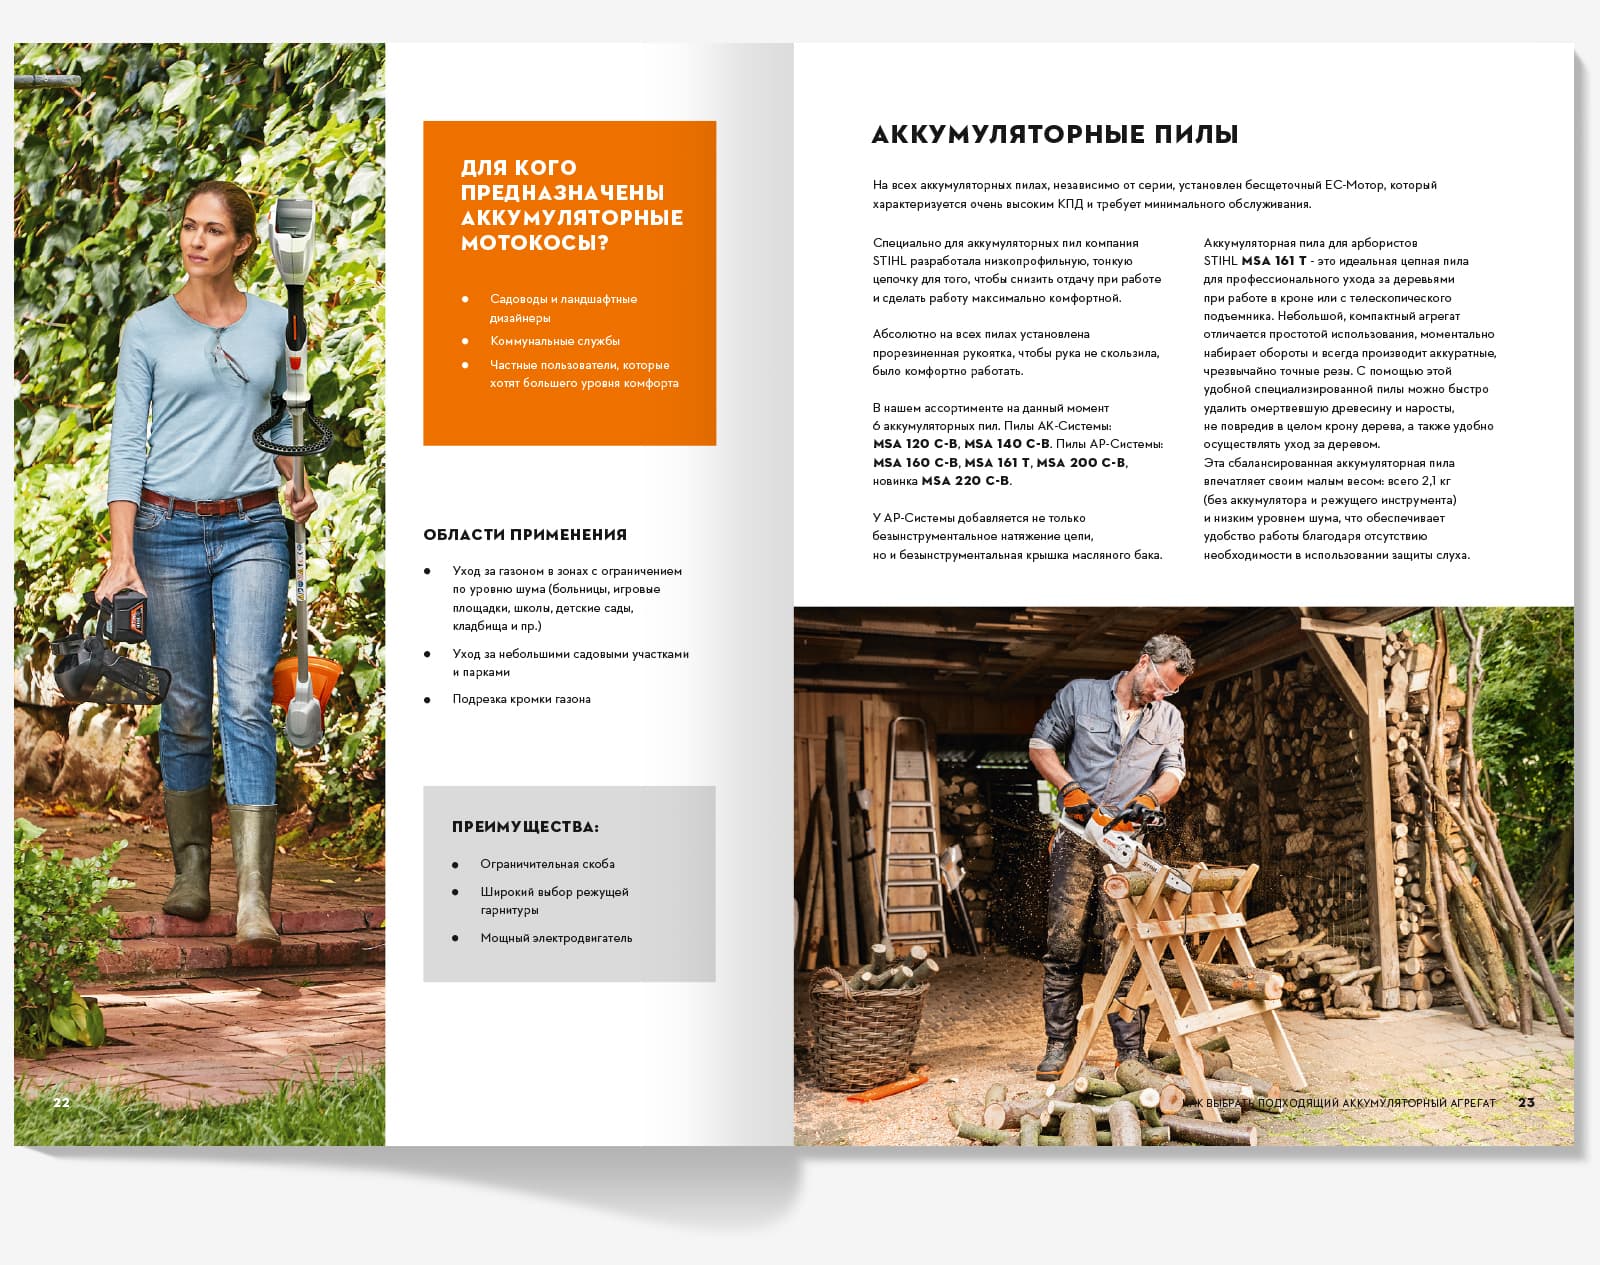 Сделали дизайн брошюры «Как легко и бесшумно работать в саду» для компании STIHL